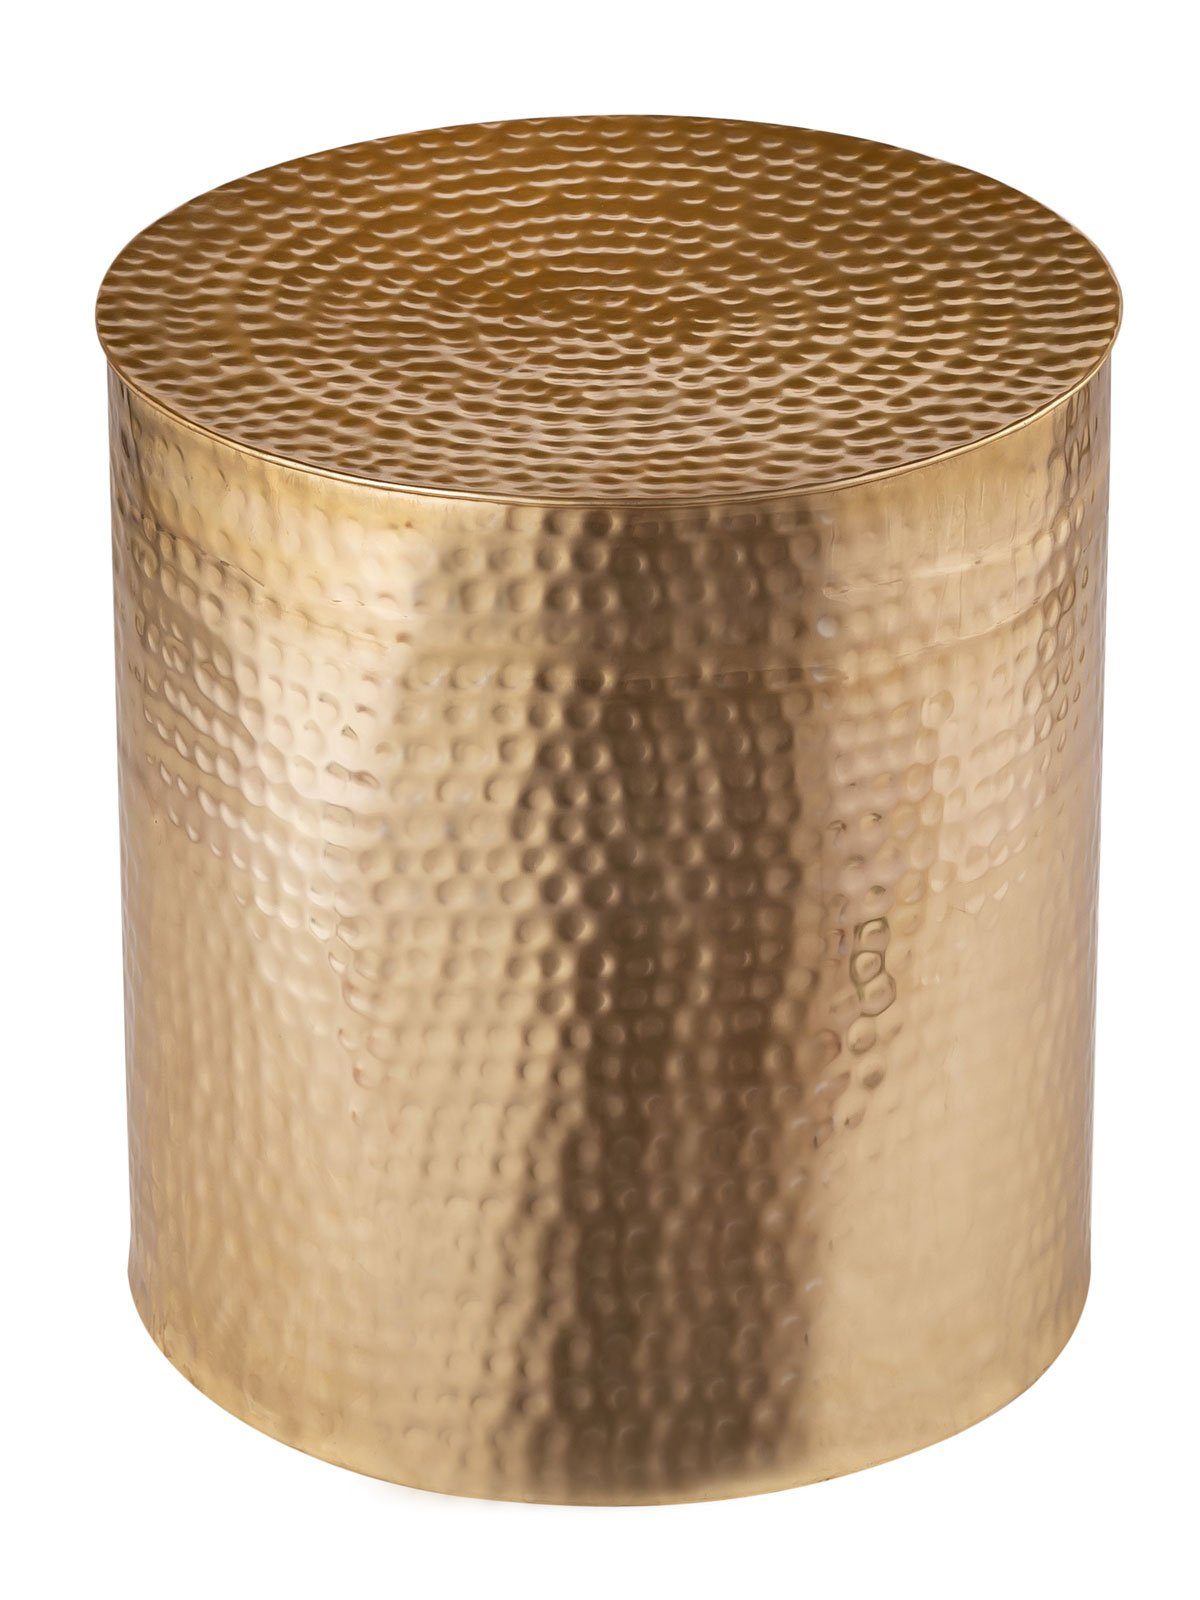 Minara Couchtisch Beistelltisch Metall Tunis silber/gold gehämmert goldfarben | Couchtische